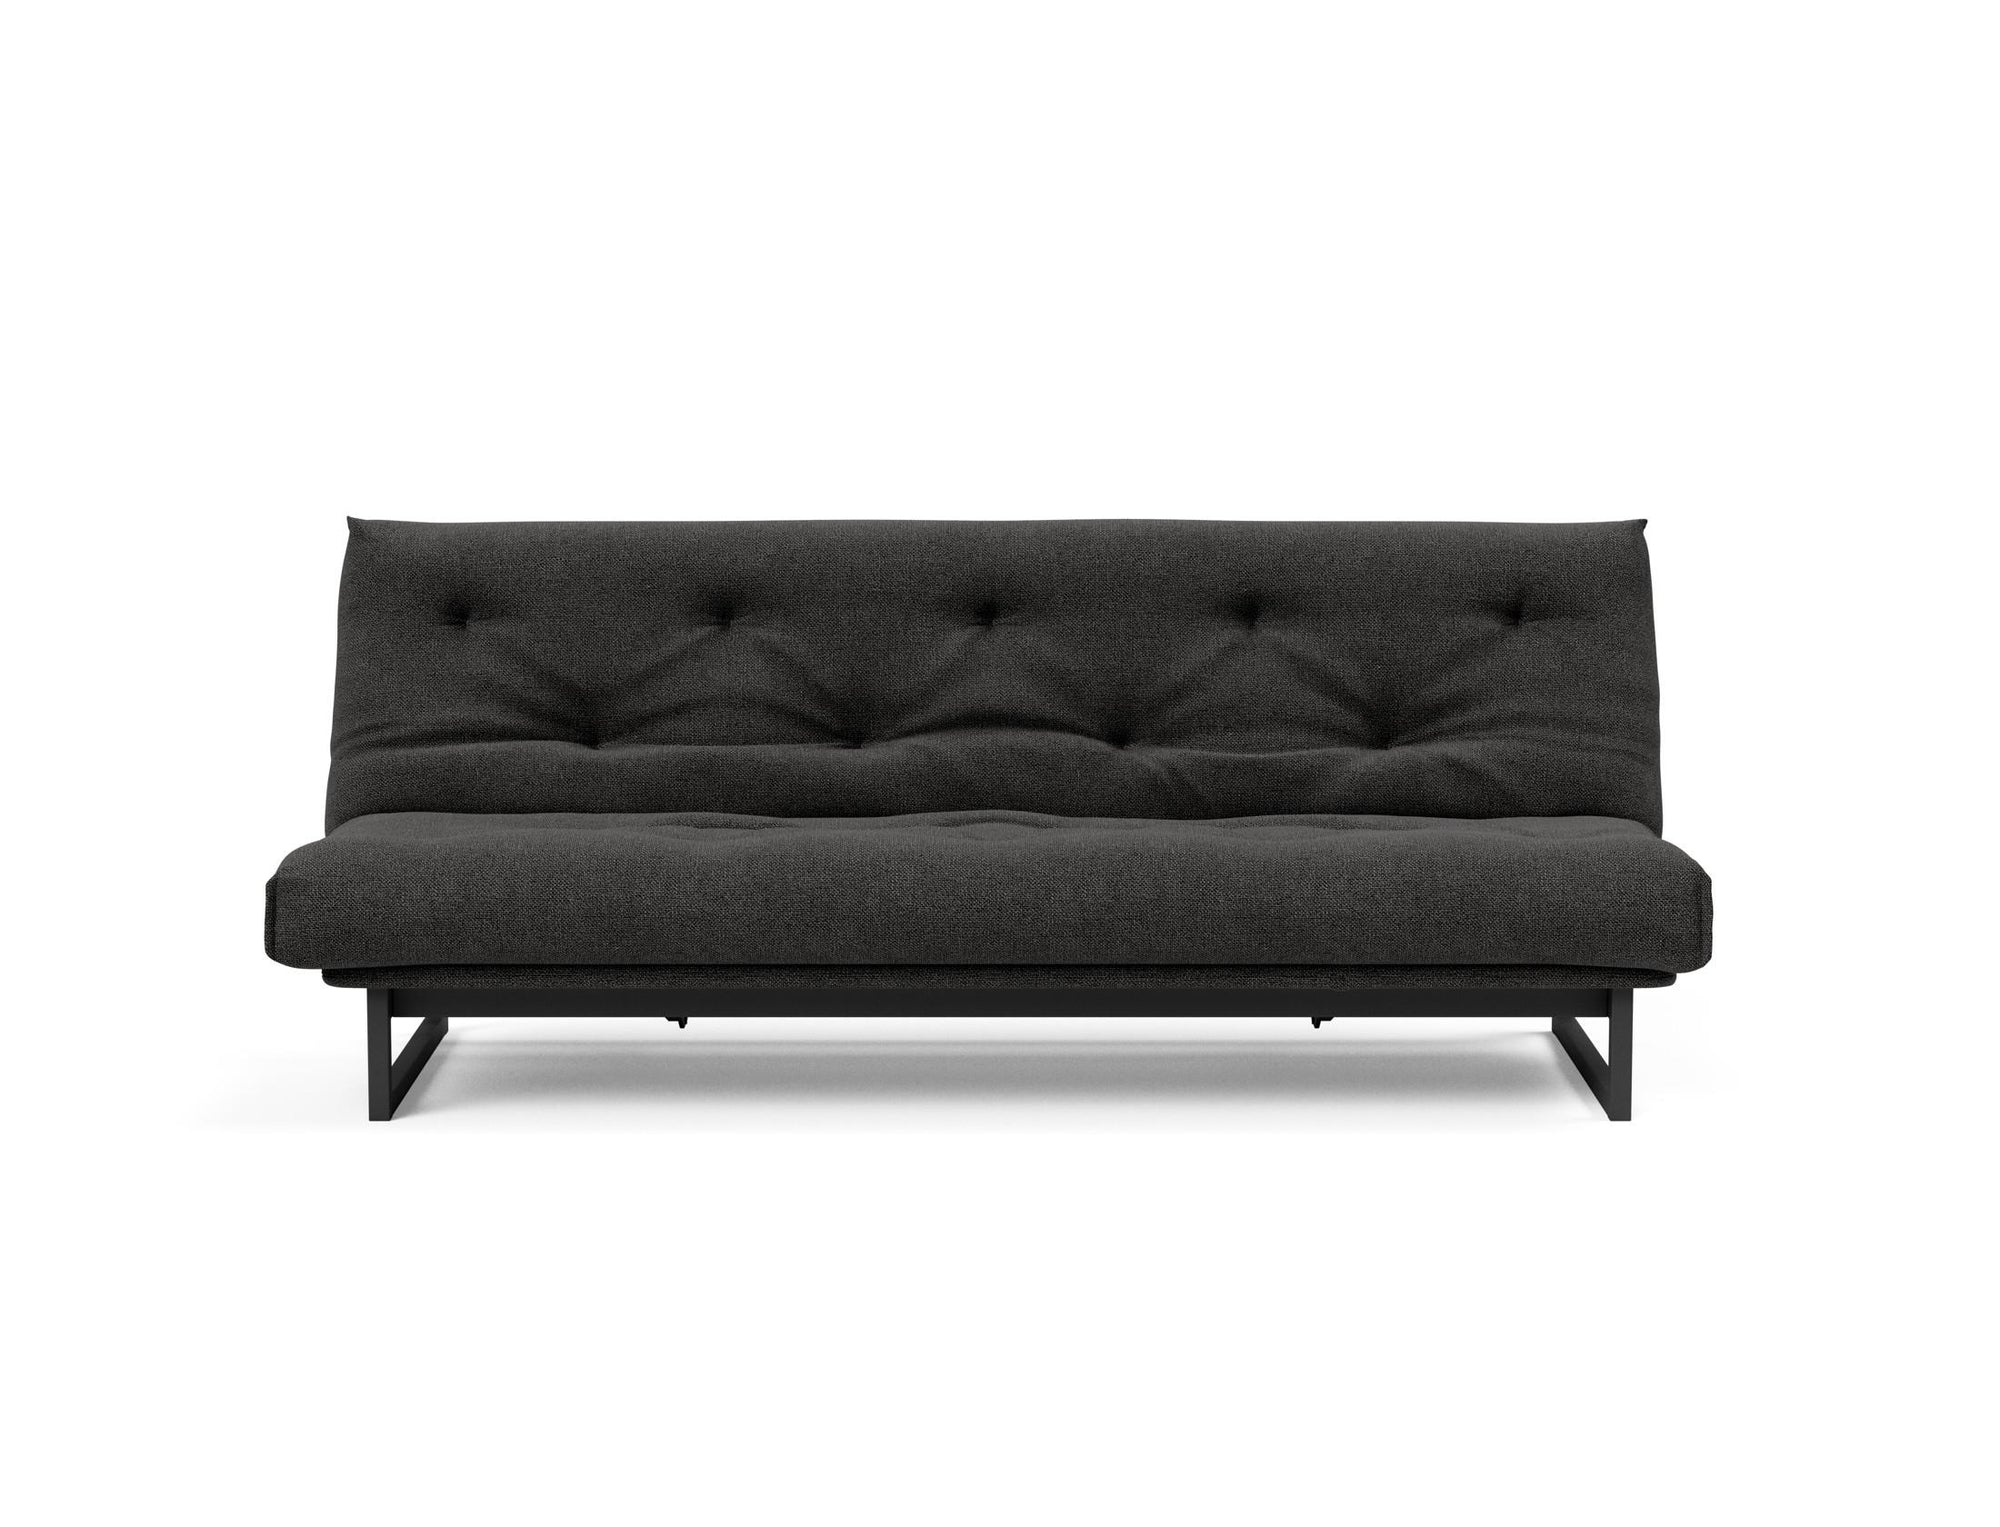 TEEN FRACTION Super Soft Sofa Bed 120 CM